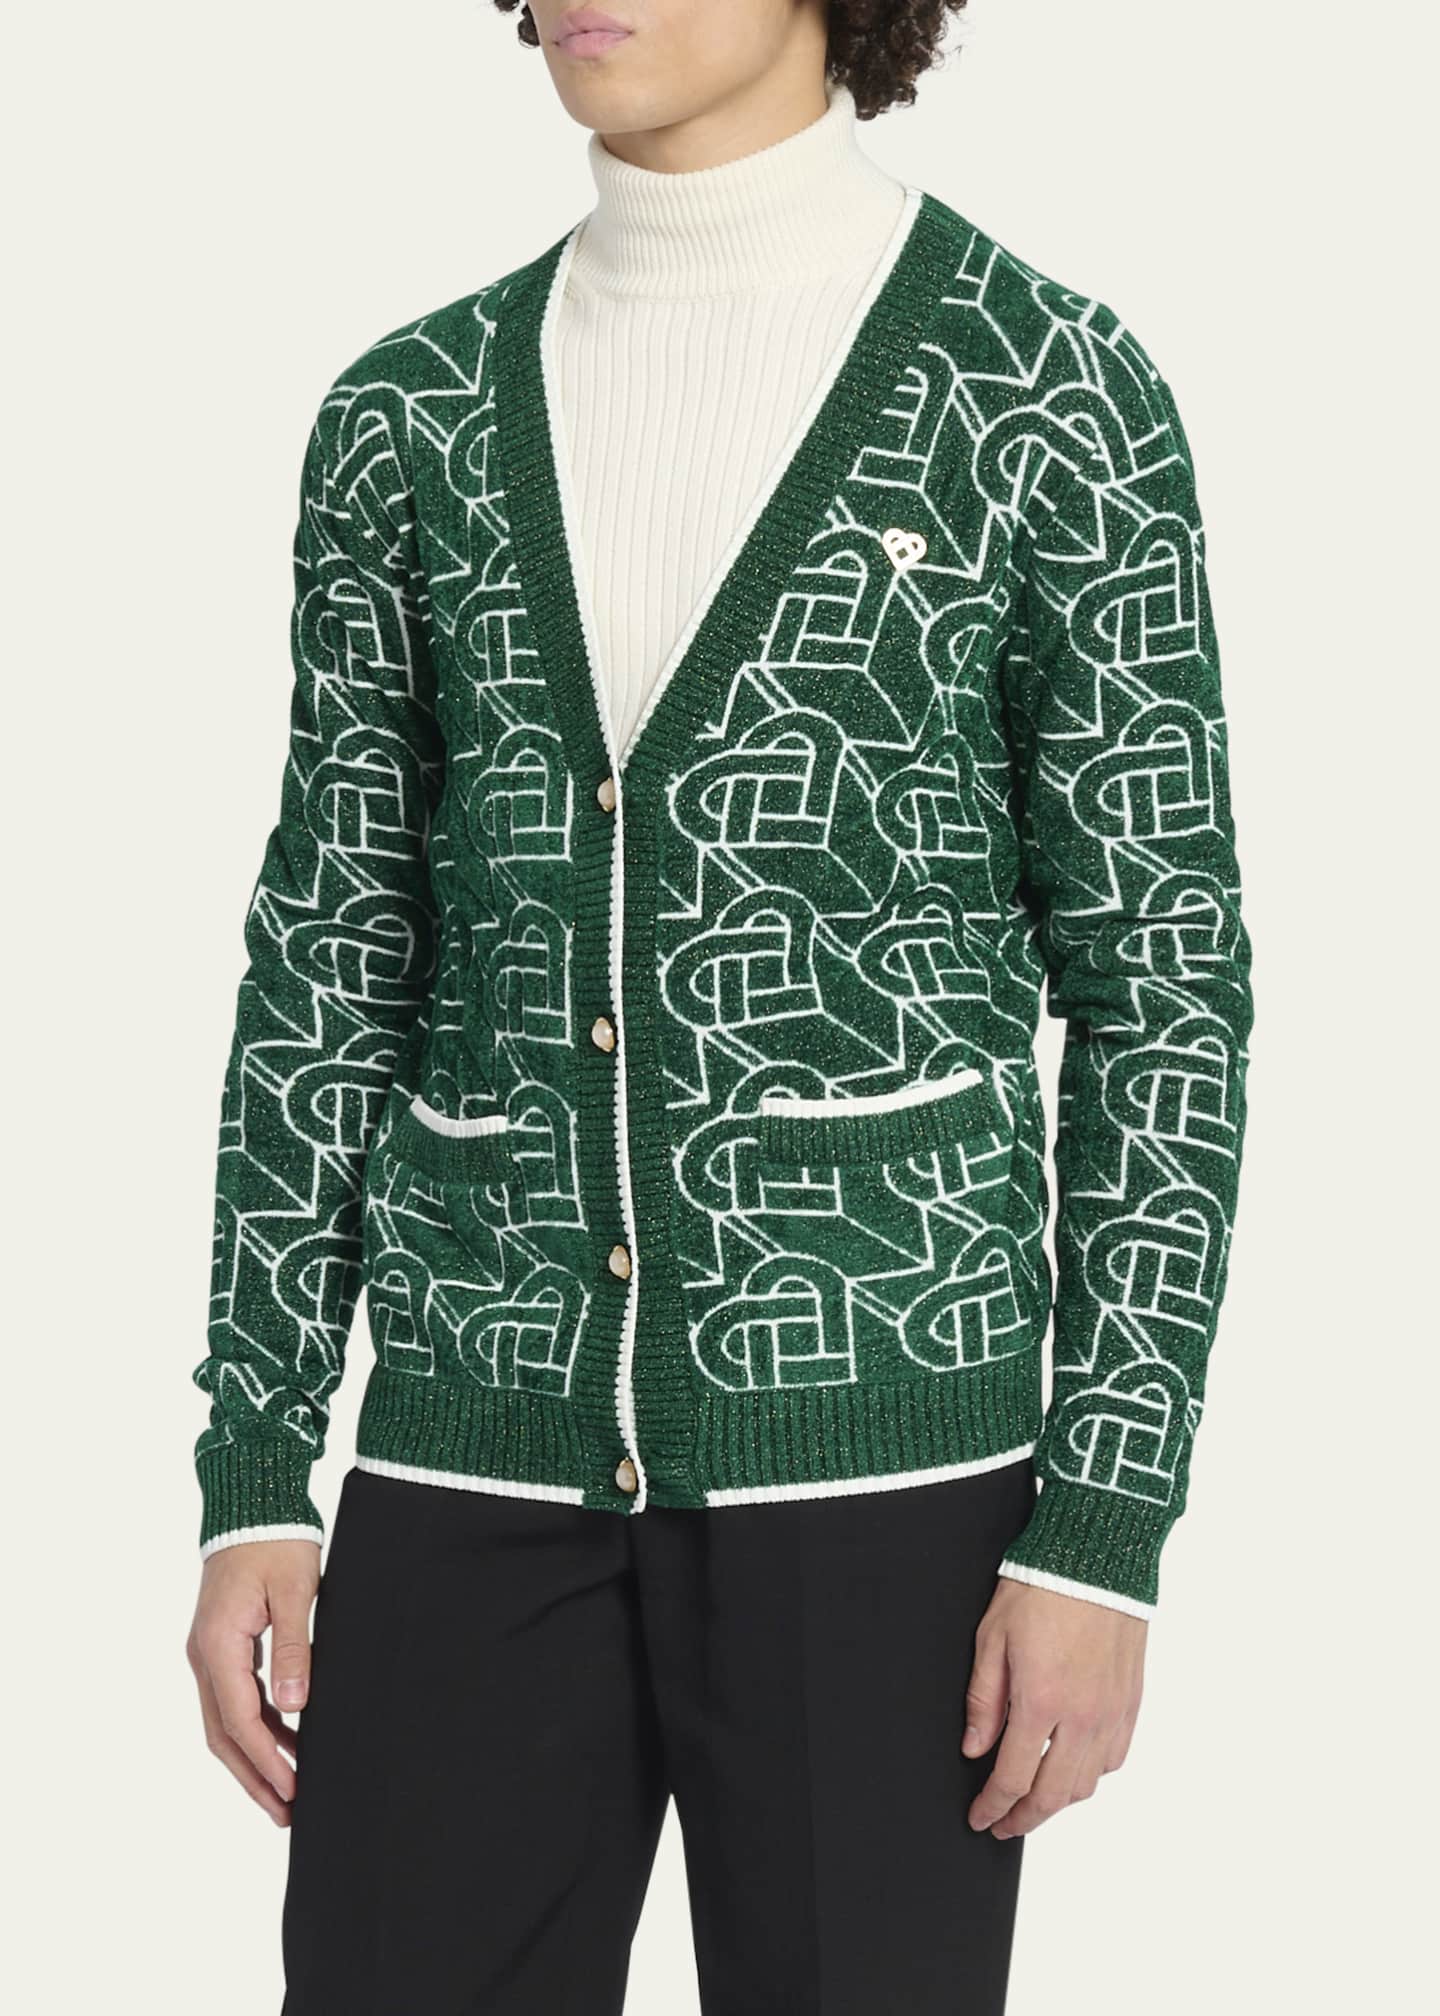 Casablanca Men's Monogram Sweater